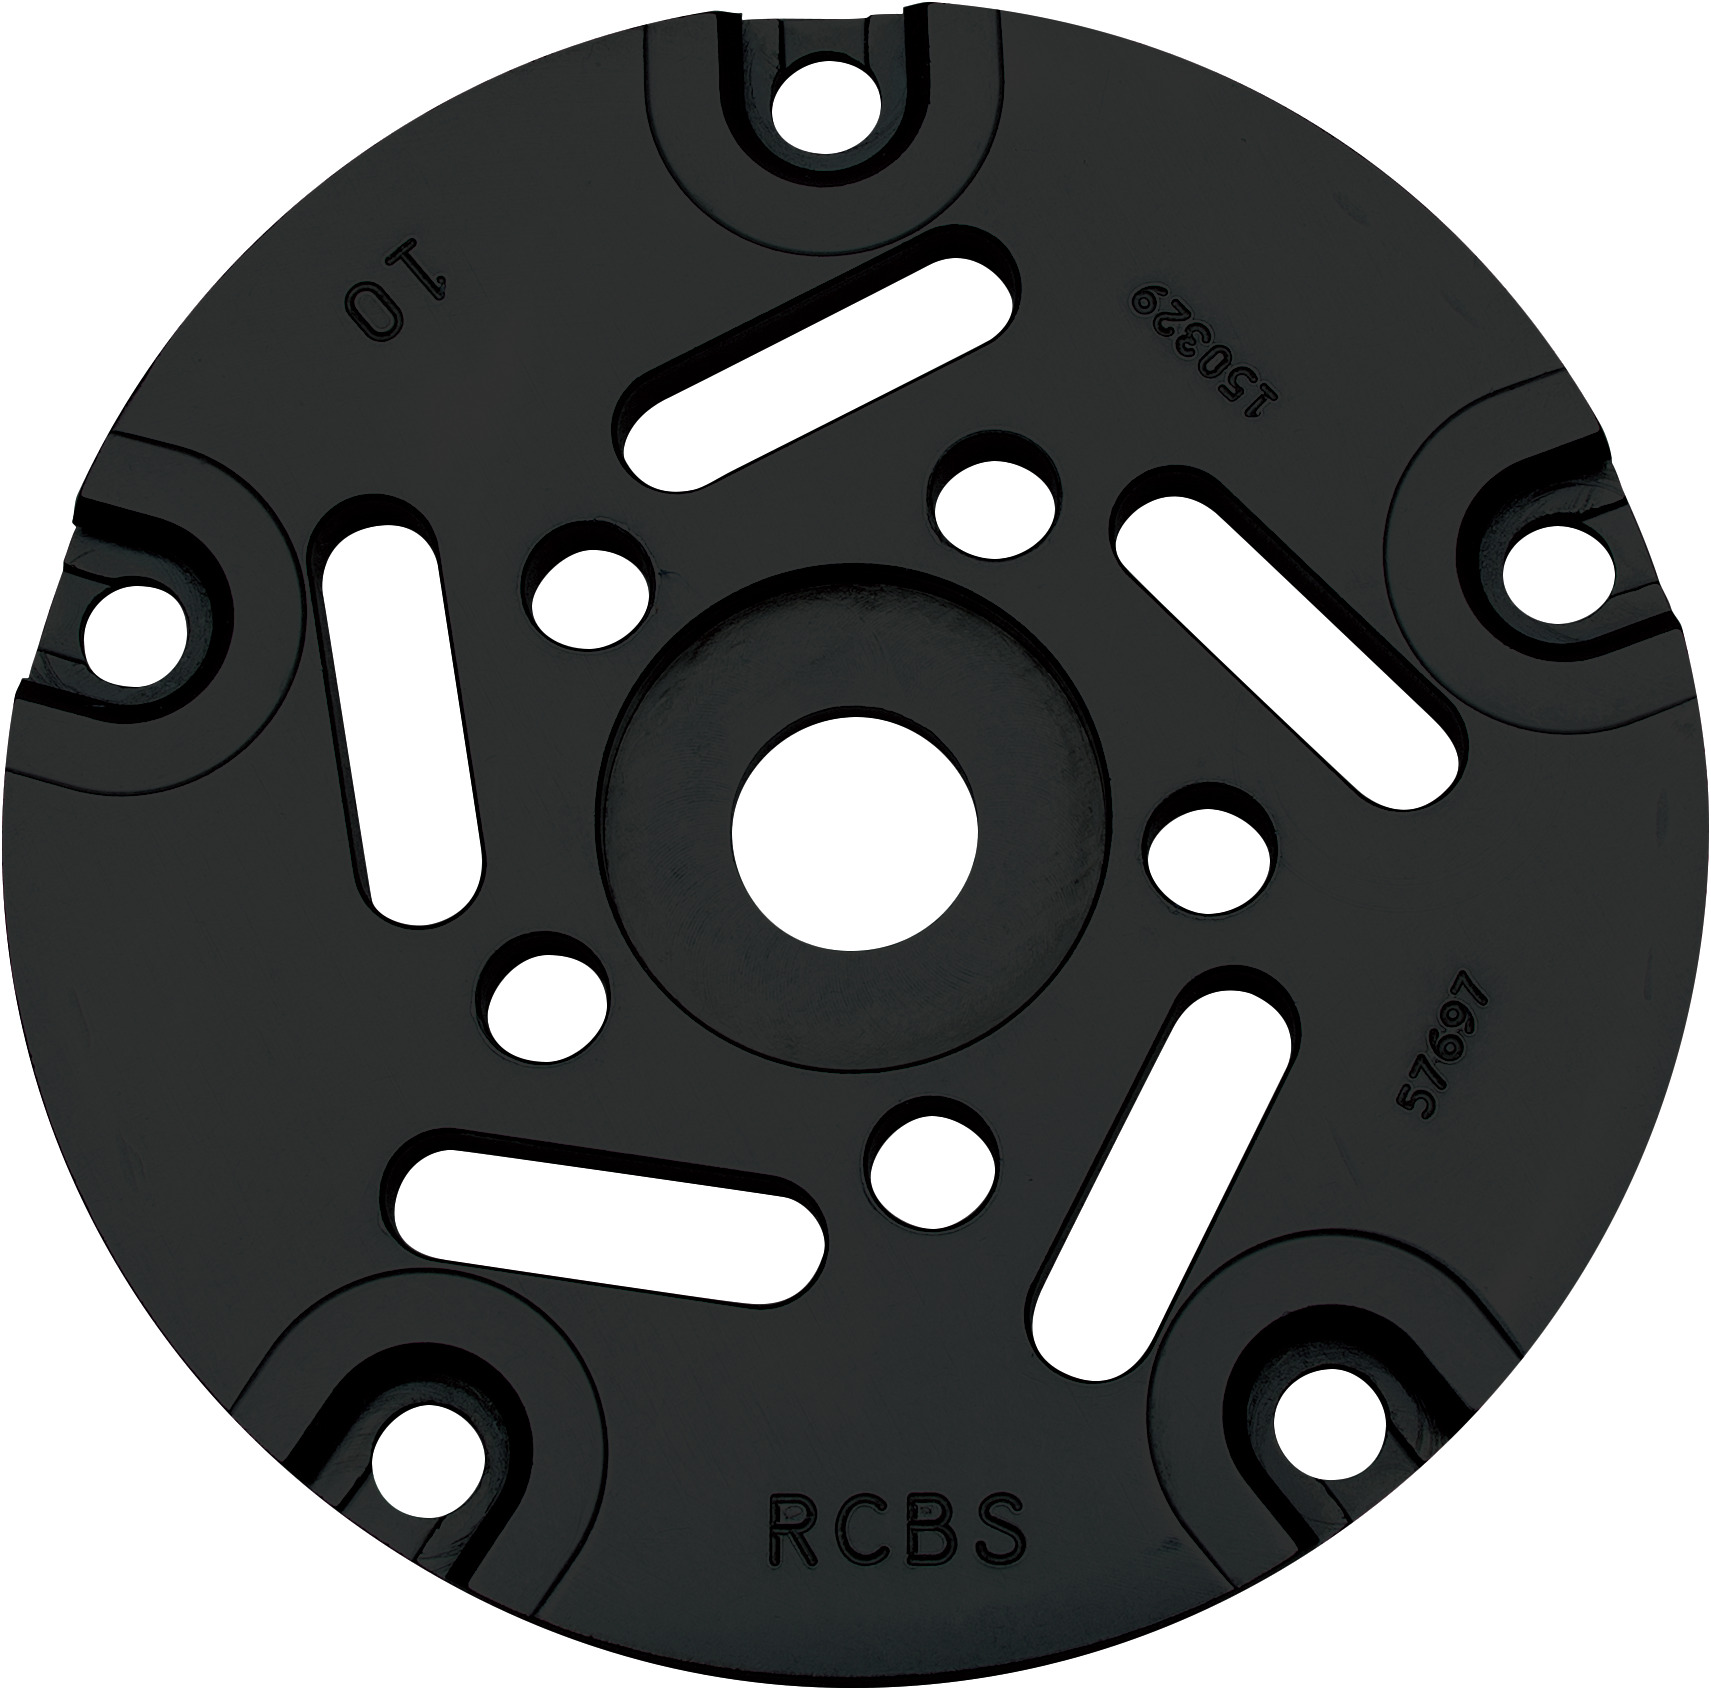 RCBS Reloading Pro Chucker 5 Station Shell Plate Bullet Holder CHOOSE MODEL 